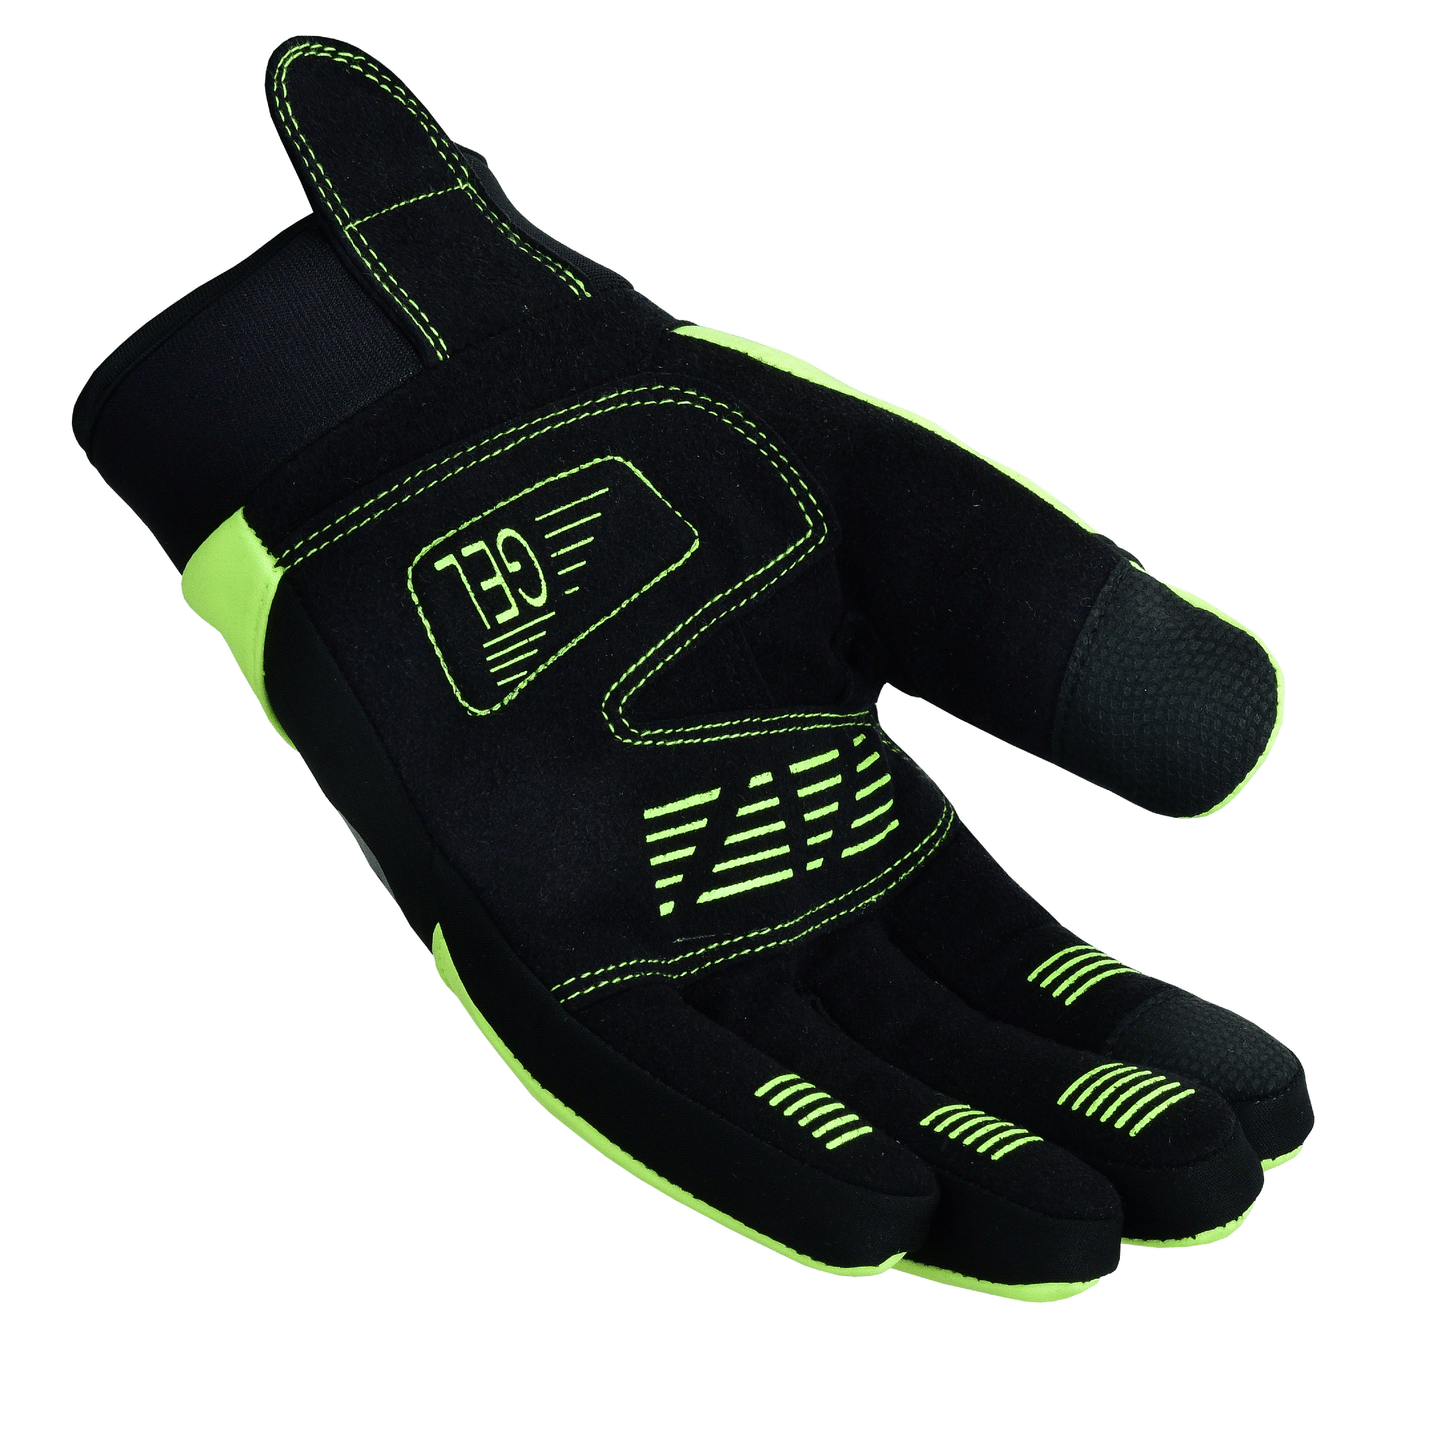 Men's Waterproof Cycling Gloves Short Cuff Hi-Viz Yellow